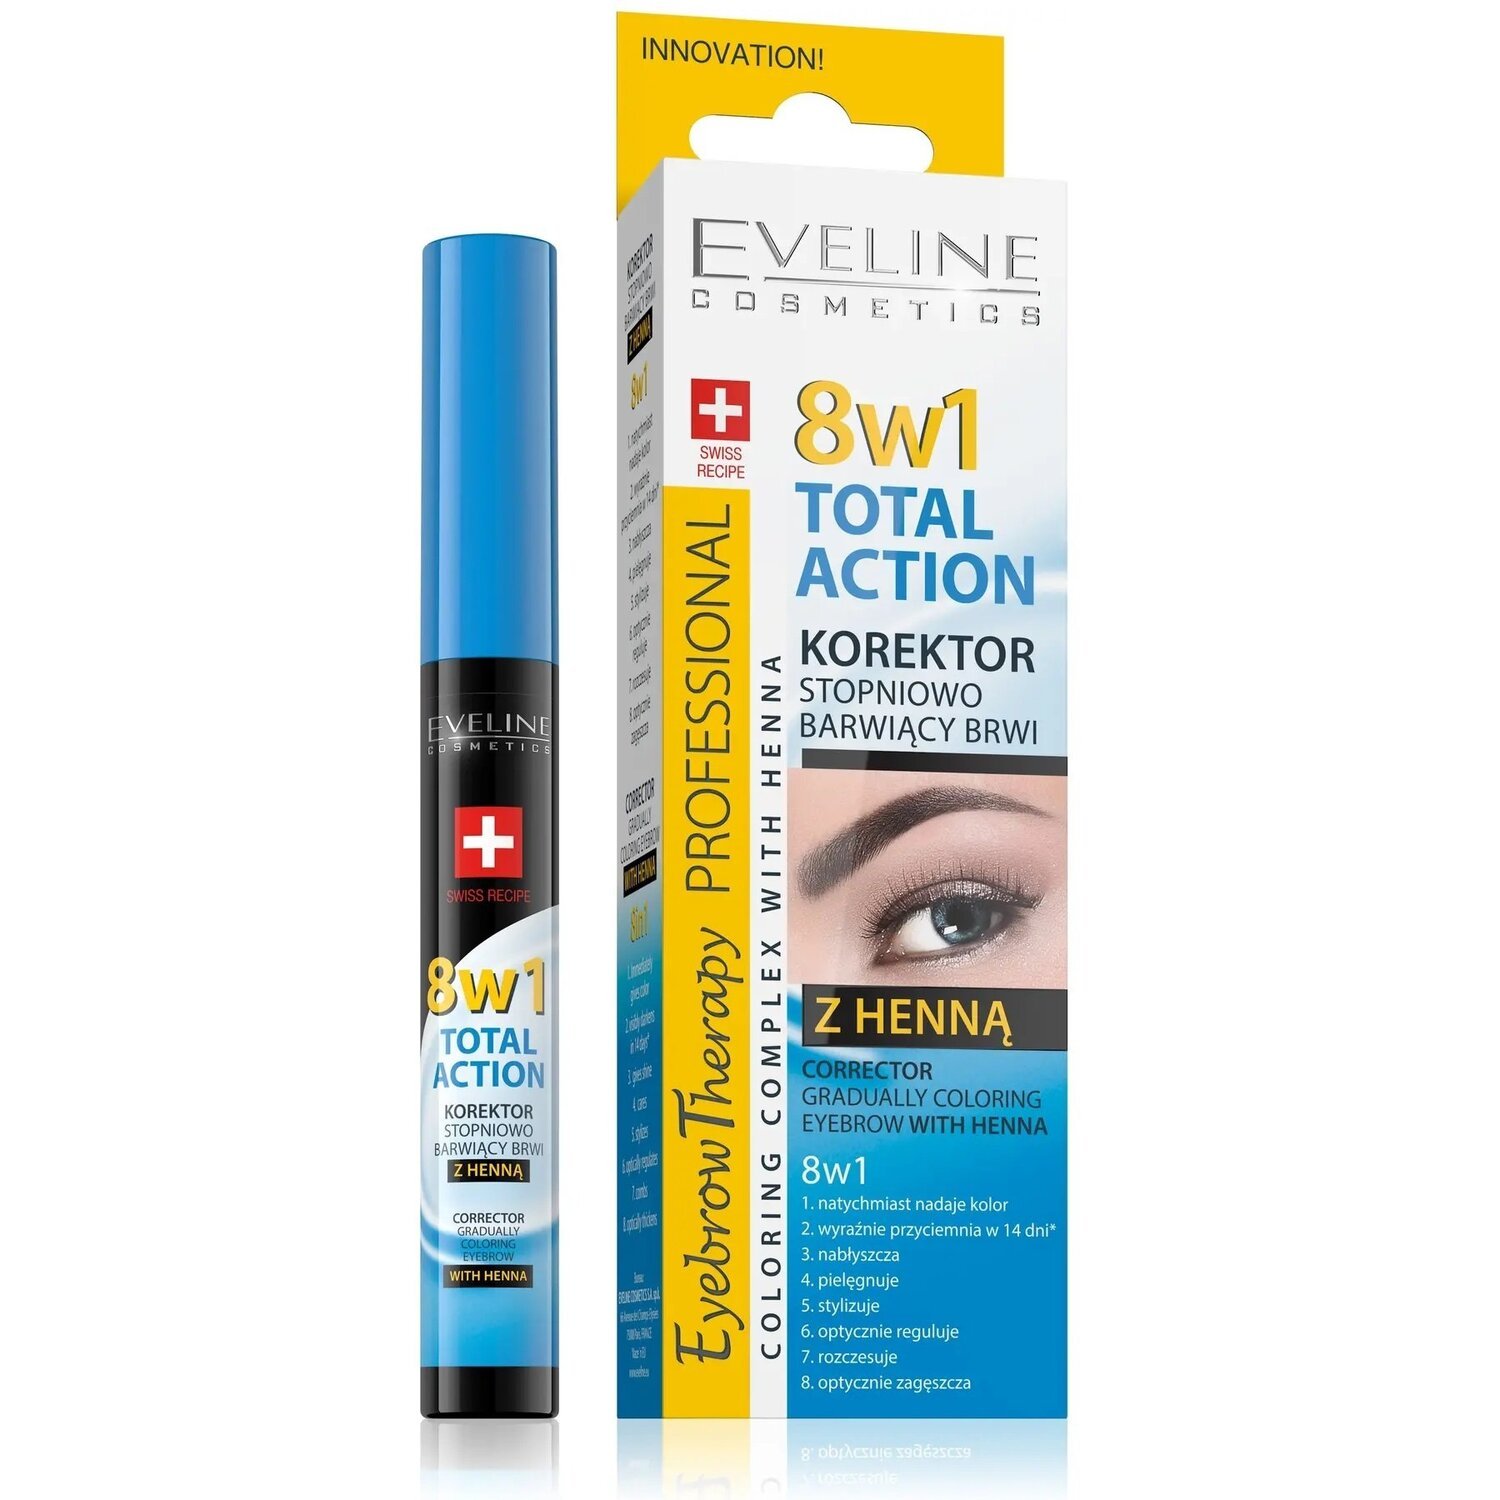 Eveline Cosmetics Корректор с хной, постепенно окрашивающий брови 8в1 total action10мл eyebrow therapy prof фото 